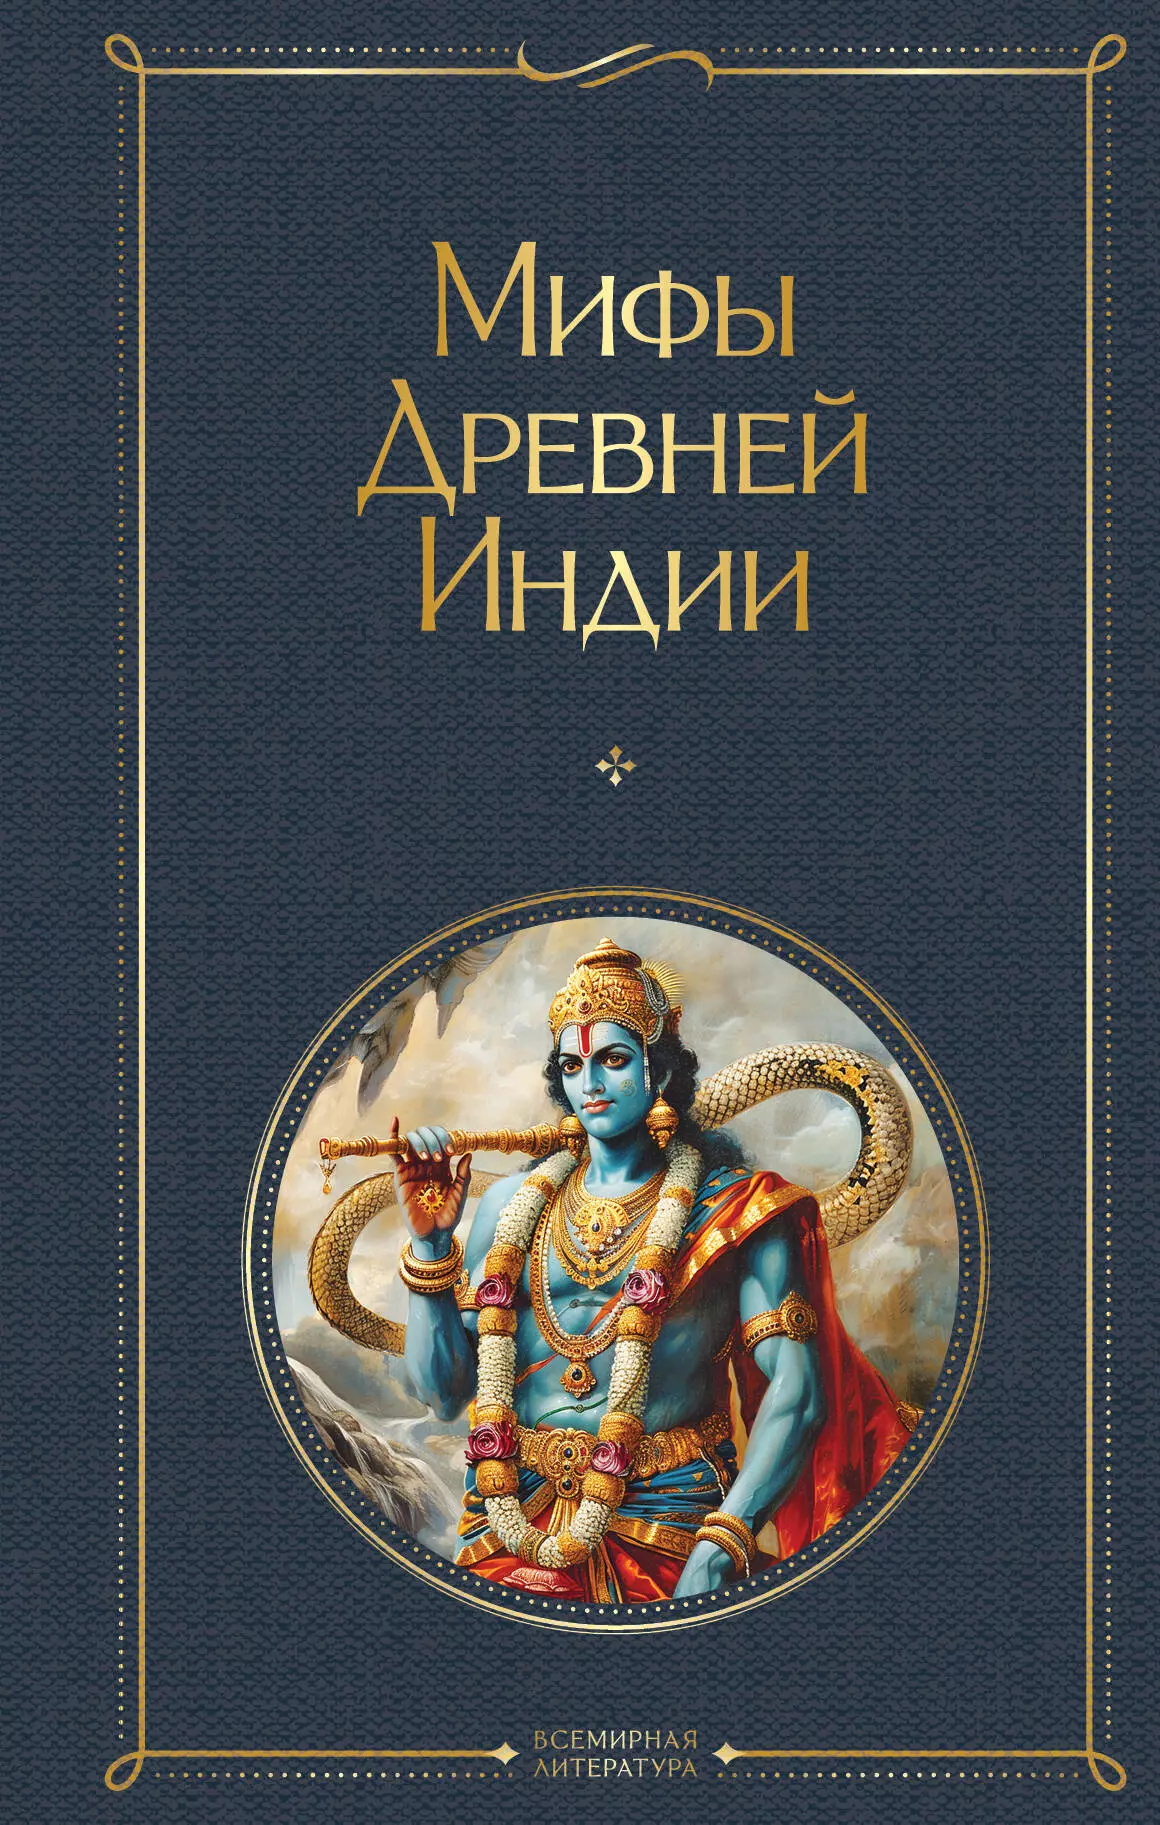 древние тексты вед мифы древней индии 4 е изд Мифы Древней Индии